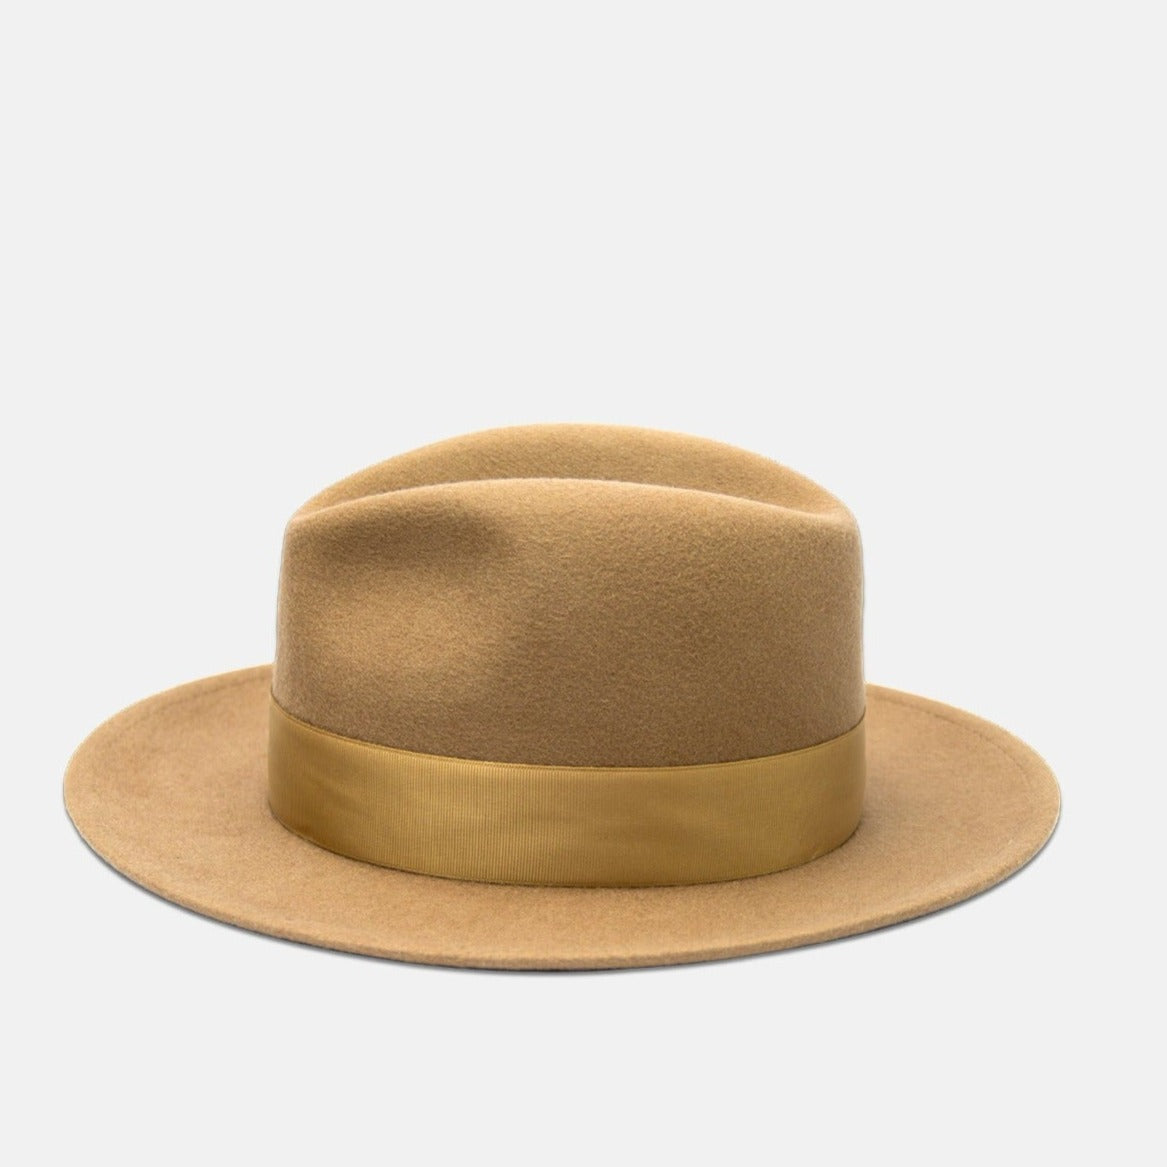 NTHIRTYTHREE - N33 - Fedora Felt Hat - Tilby Golden Beige - handmade in Europe